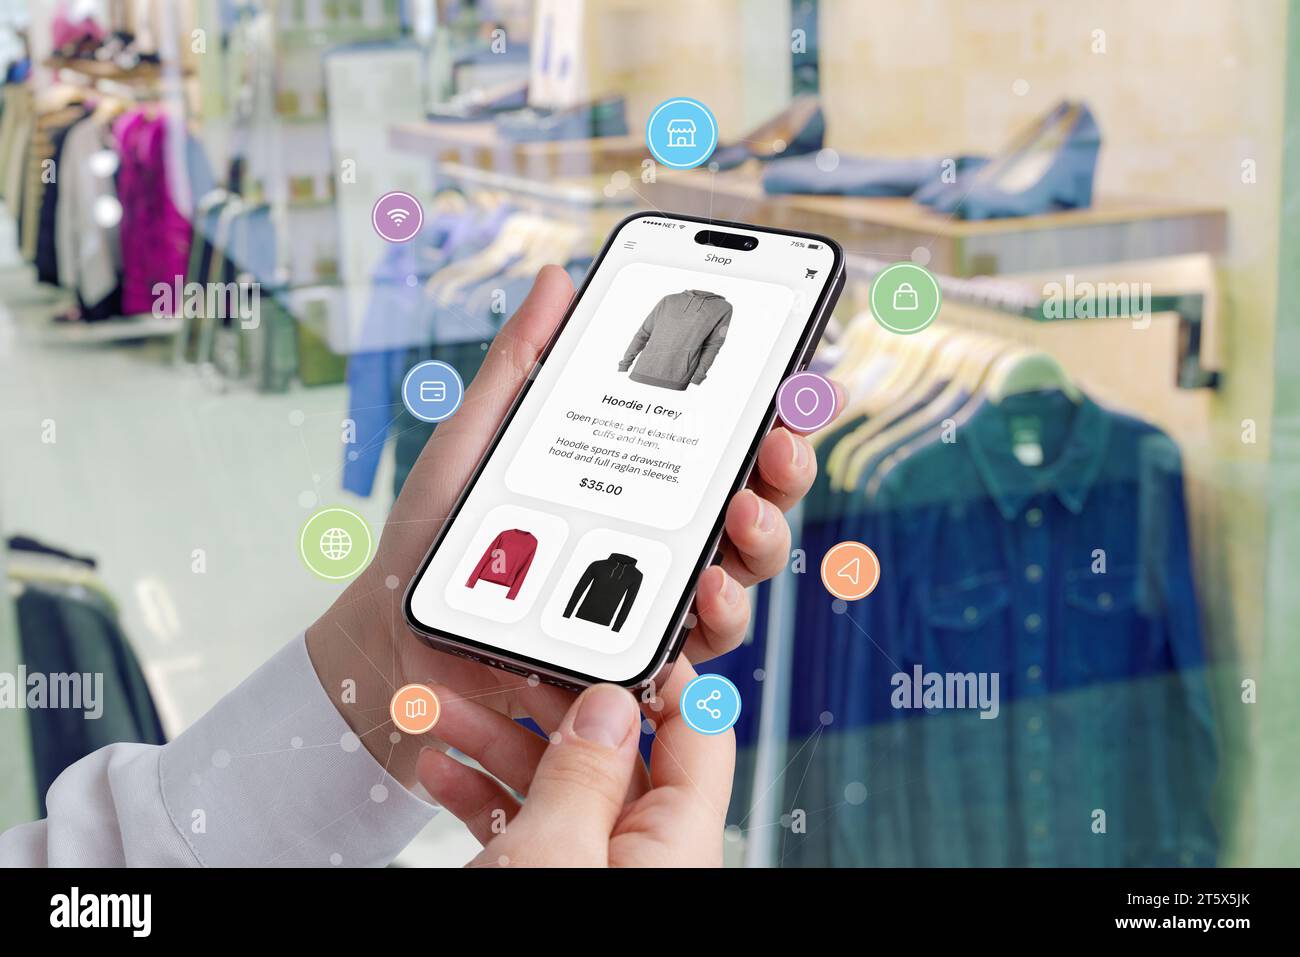 Le mani delle donne tengono uno smartphone con un'app per lo shopping circondata da icone dello shopping, mentre una boutique mette in mostra i vestiti sullo sfondo Foto Stock